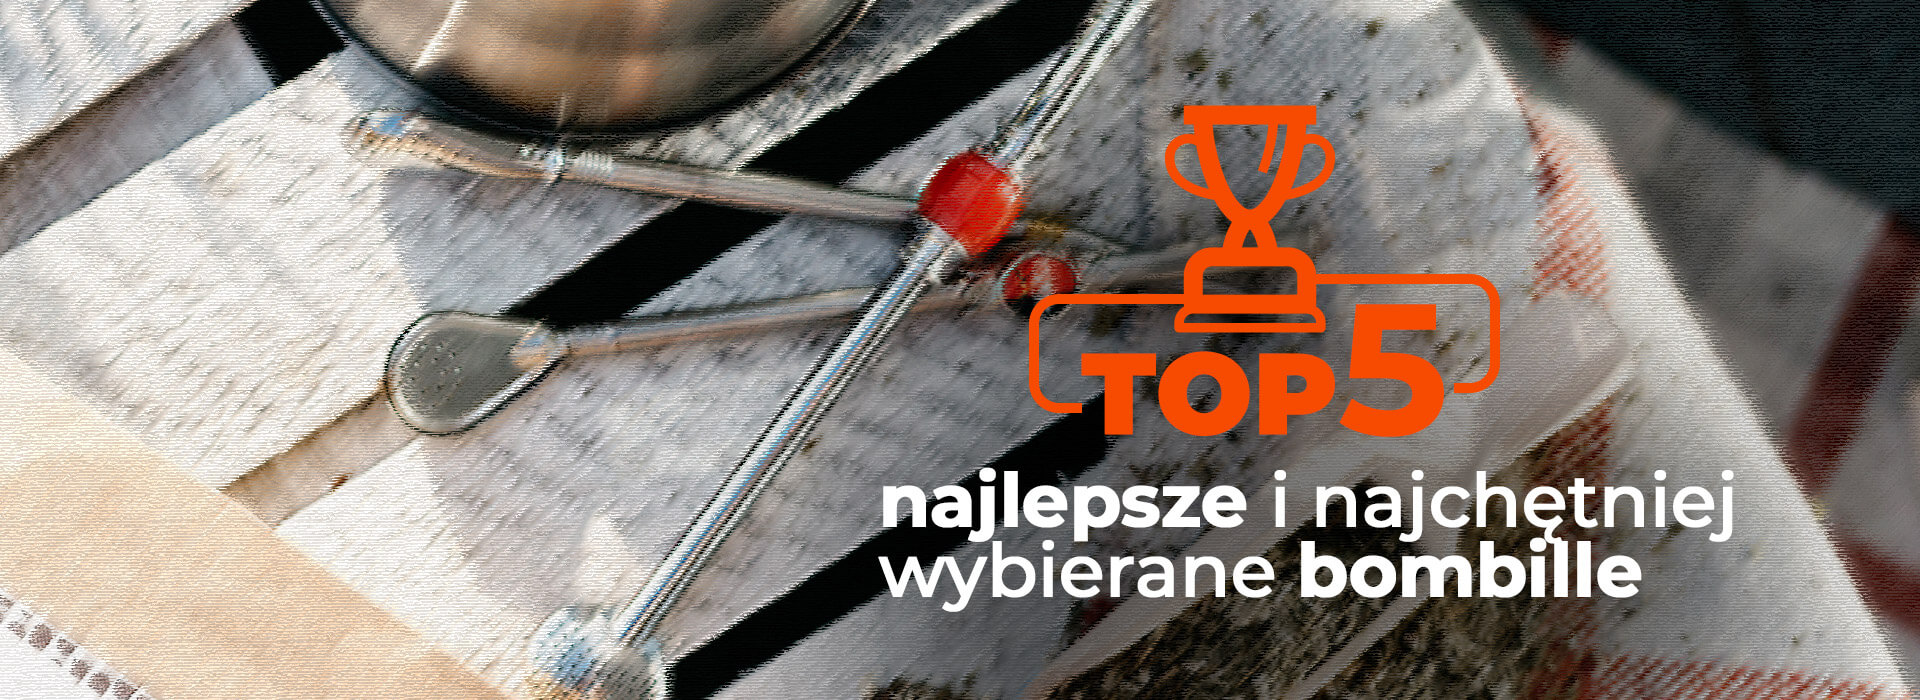  Przekonaj się które bombille są najczęściej wybierane wśród naszych klientów! 
  
  
  
  
  
  
  
  
  
  
  
  
  
  
   | ZielonyTarg.pl